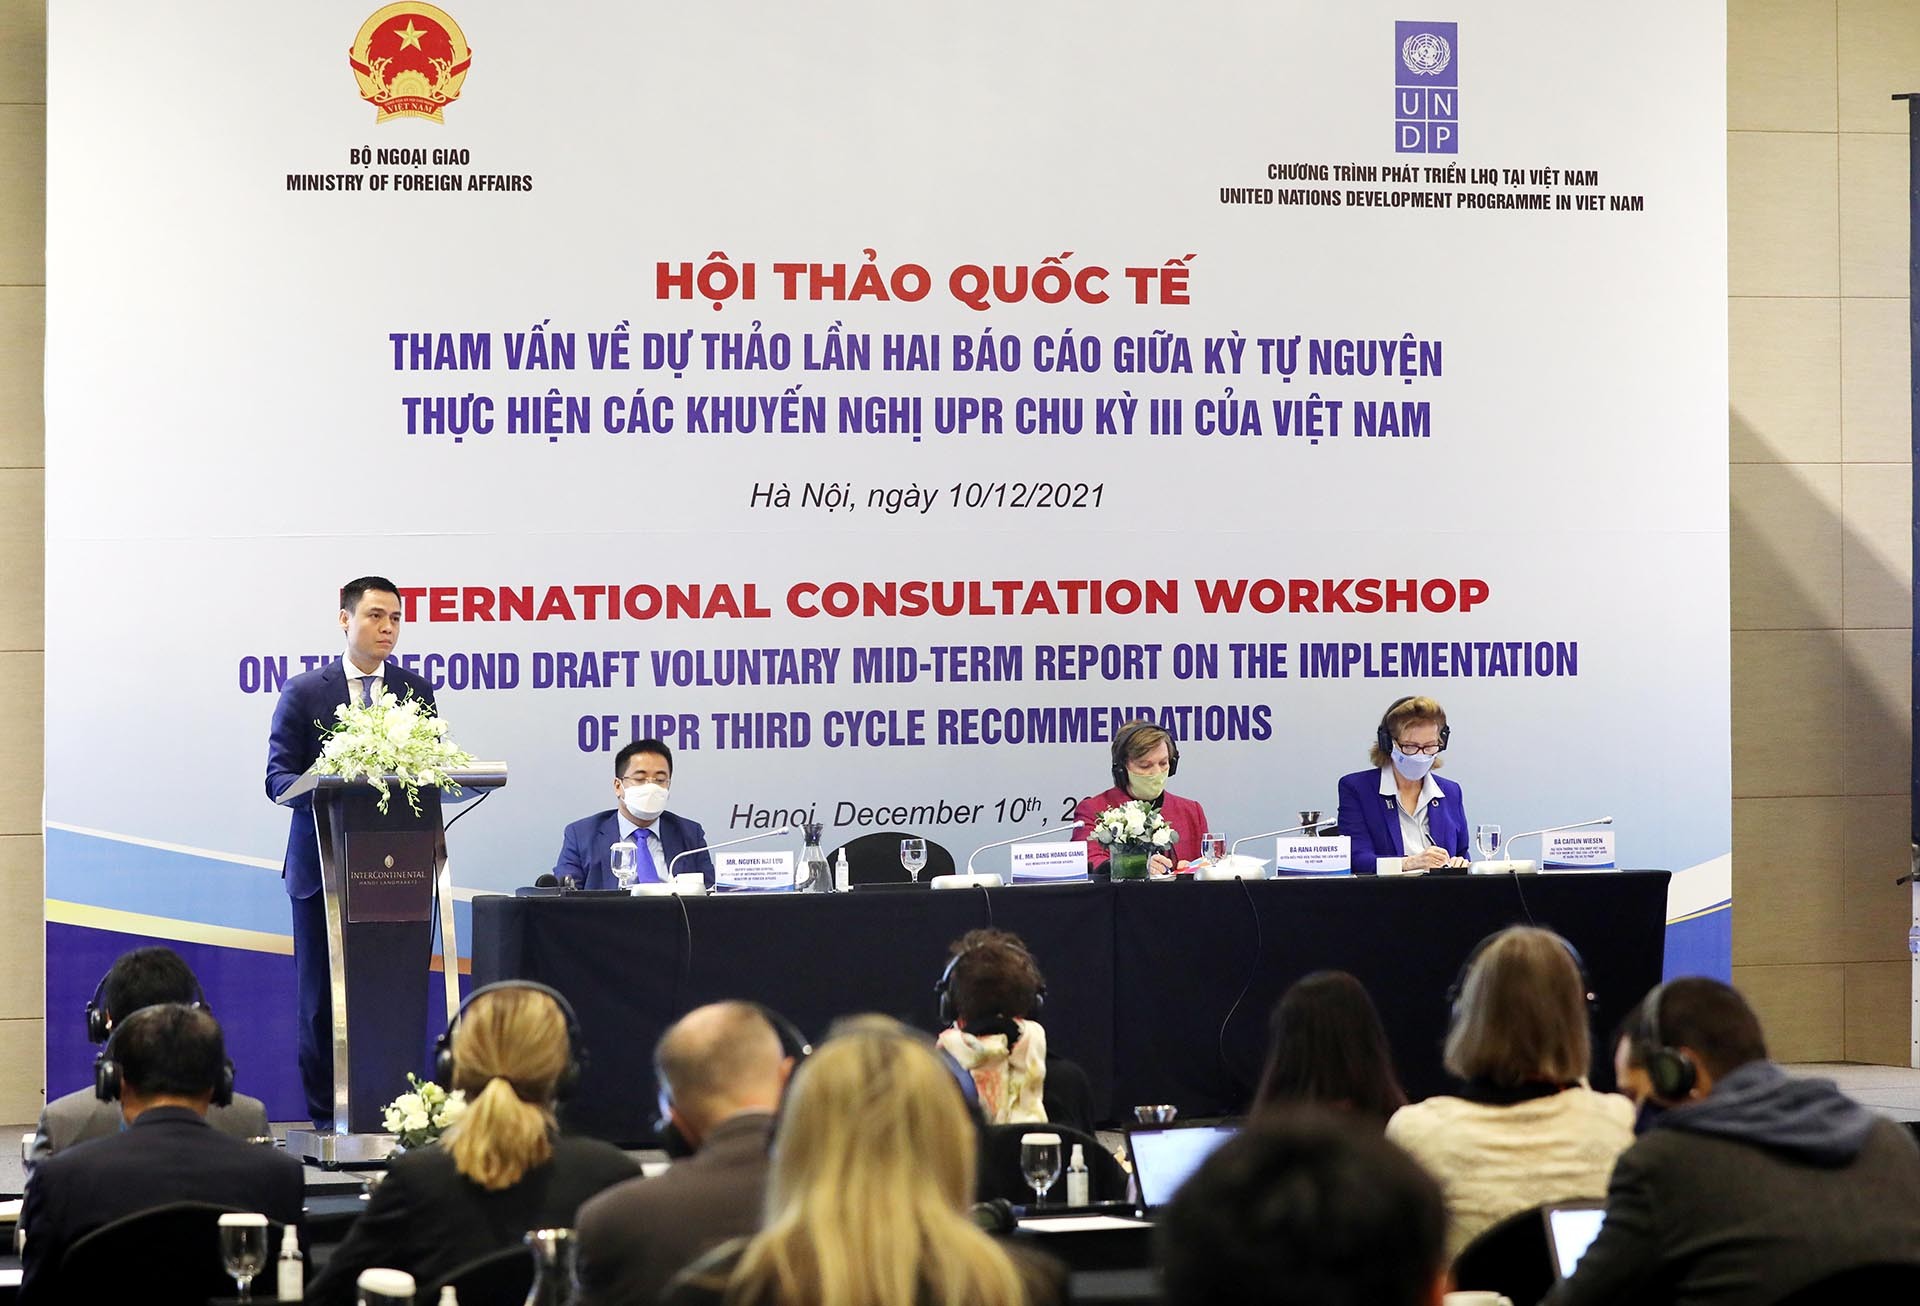 Bộ Ngoại giao phối hợp với Chương trình Phát triển Liên hợp quốc (LHQ) (UNDP) tại Việt Nam đã tổ chức Hội thảo tham vấn lần thứ hai về dự thảo Báo cáo giữa kỳ tự nguyện thực hiện các khuyến nghị theo Cơ chế Rà soát định kỳ phổ quát (UPR) chu kỳ III của Vi